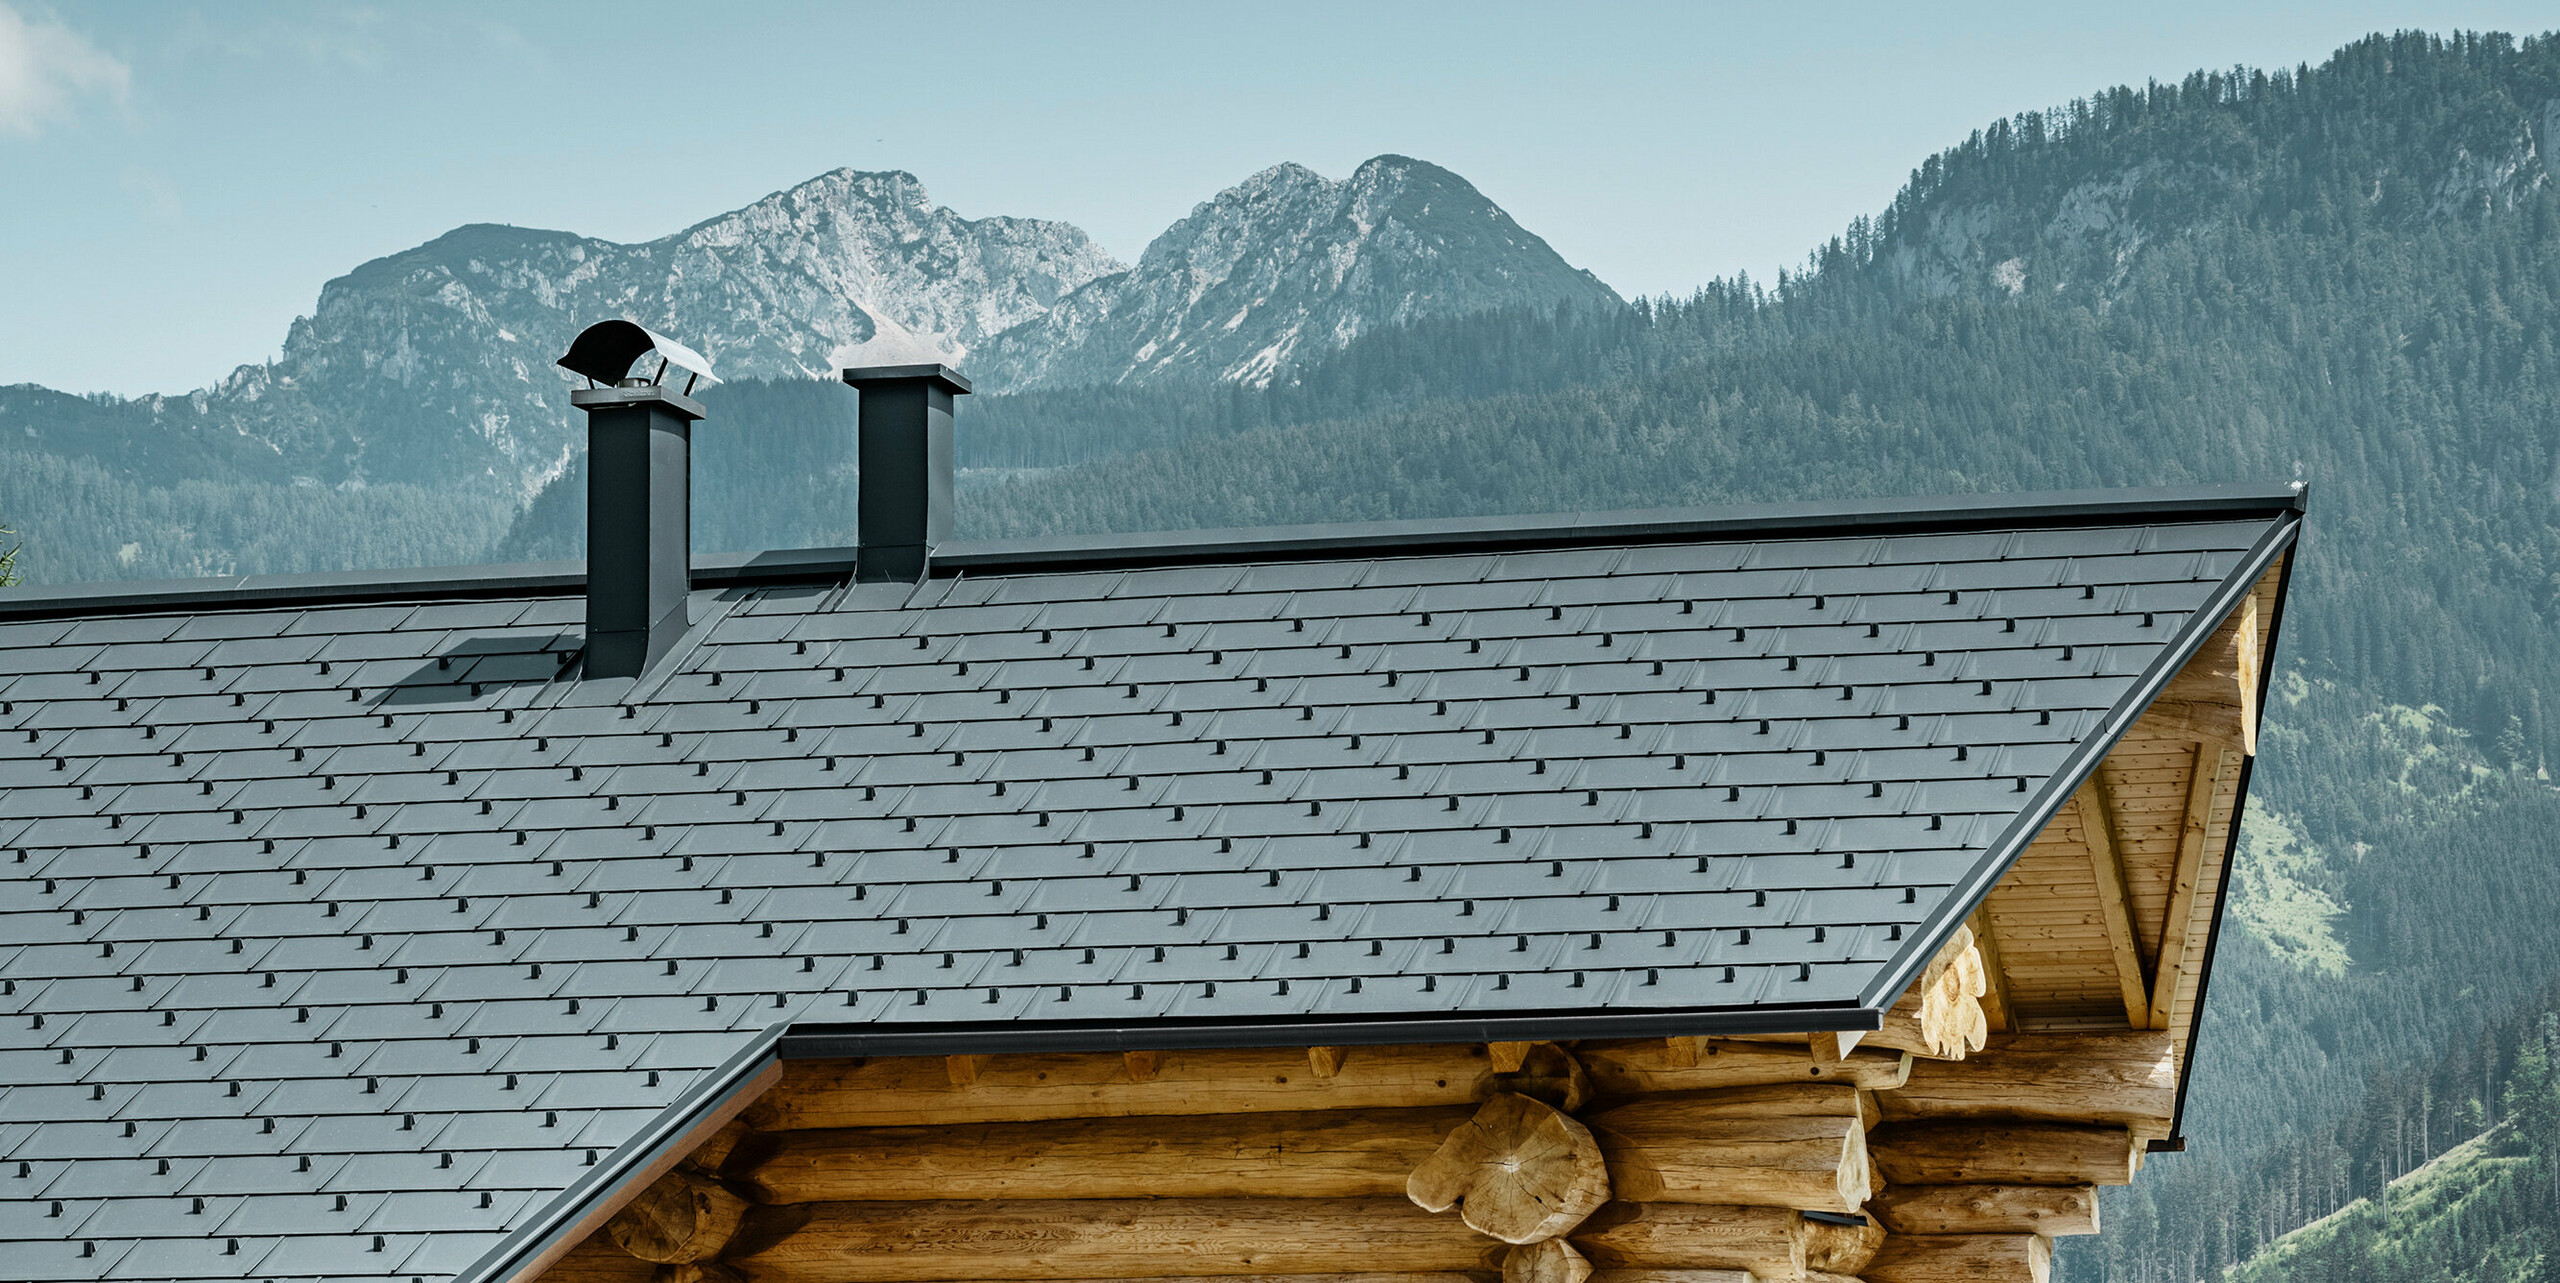 Navdušujoč pogled na tradicionalno brunarico v Gosau-u v Avstriji pred impresivno gorsko panoramo. Hiša ima aluminijasto PREFA streho, sestavljeno iz strešnih plošč R.16 v P.10 antracitni barvi. Streha v antracitni barvi daje sodoben poudarek rustikalni leseni konstrukciji. Visokokakovostne strešne plošče se brezhibno prilegajo alpski pokrajini, medtem ko naravnost lesene hiše poudarja podeželski življenjski slog. Kombinacija naravnih materialov in estetske zasnove strehe daje tej nepremičnini brezčasen čar.